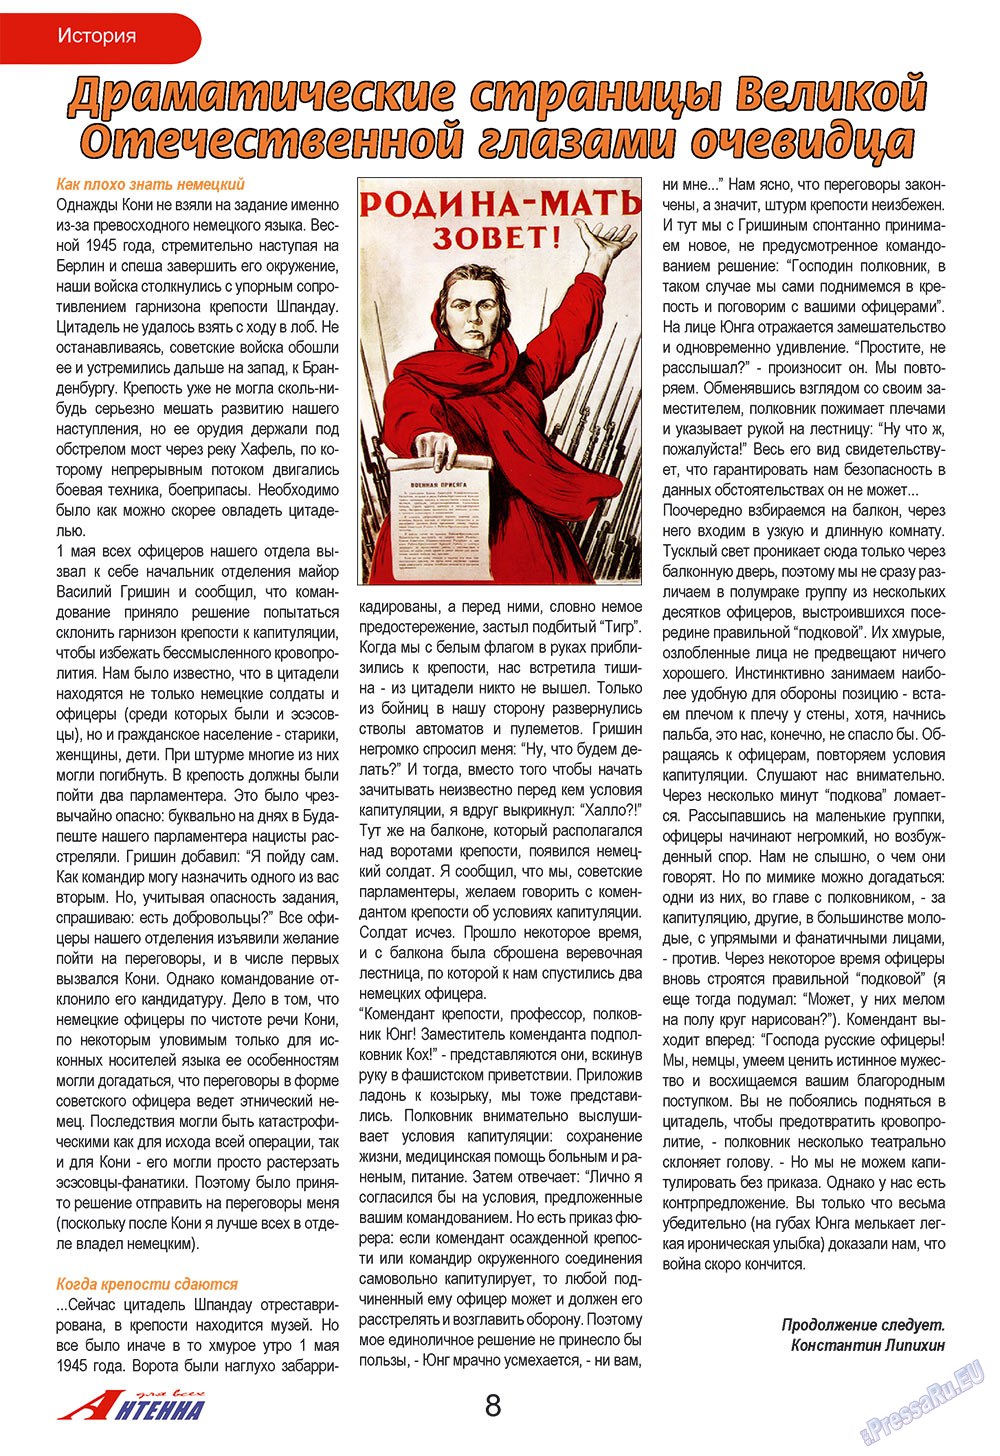 Антенна, журнал. 2009 №6 стр.8